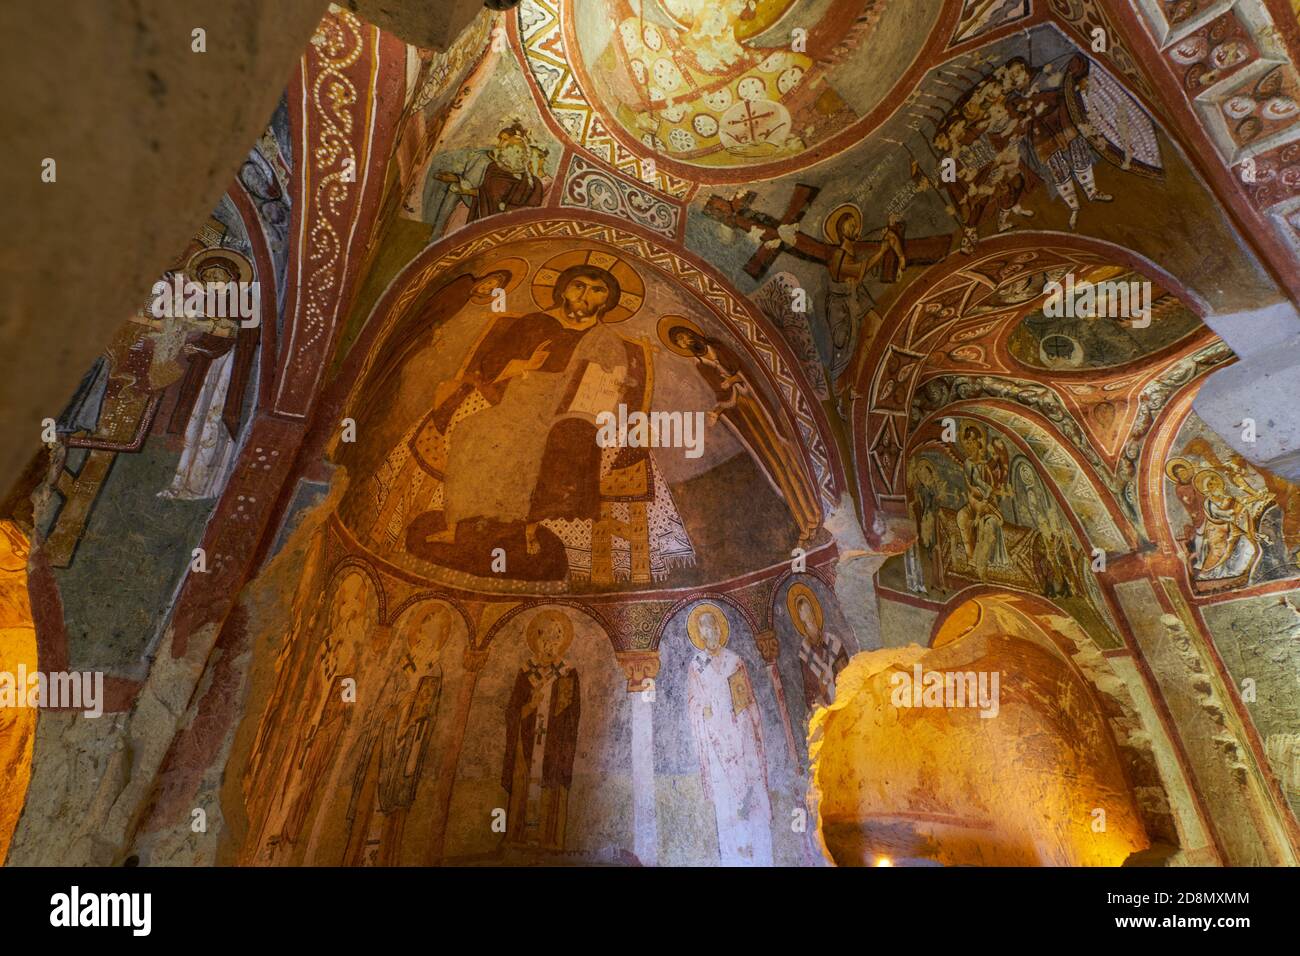 Sandalo della chiesa immagini e fotografie stock ad alta risoluzione - Alamy